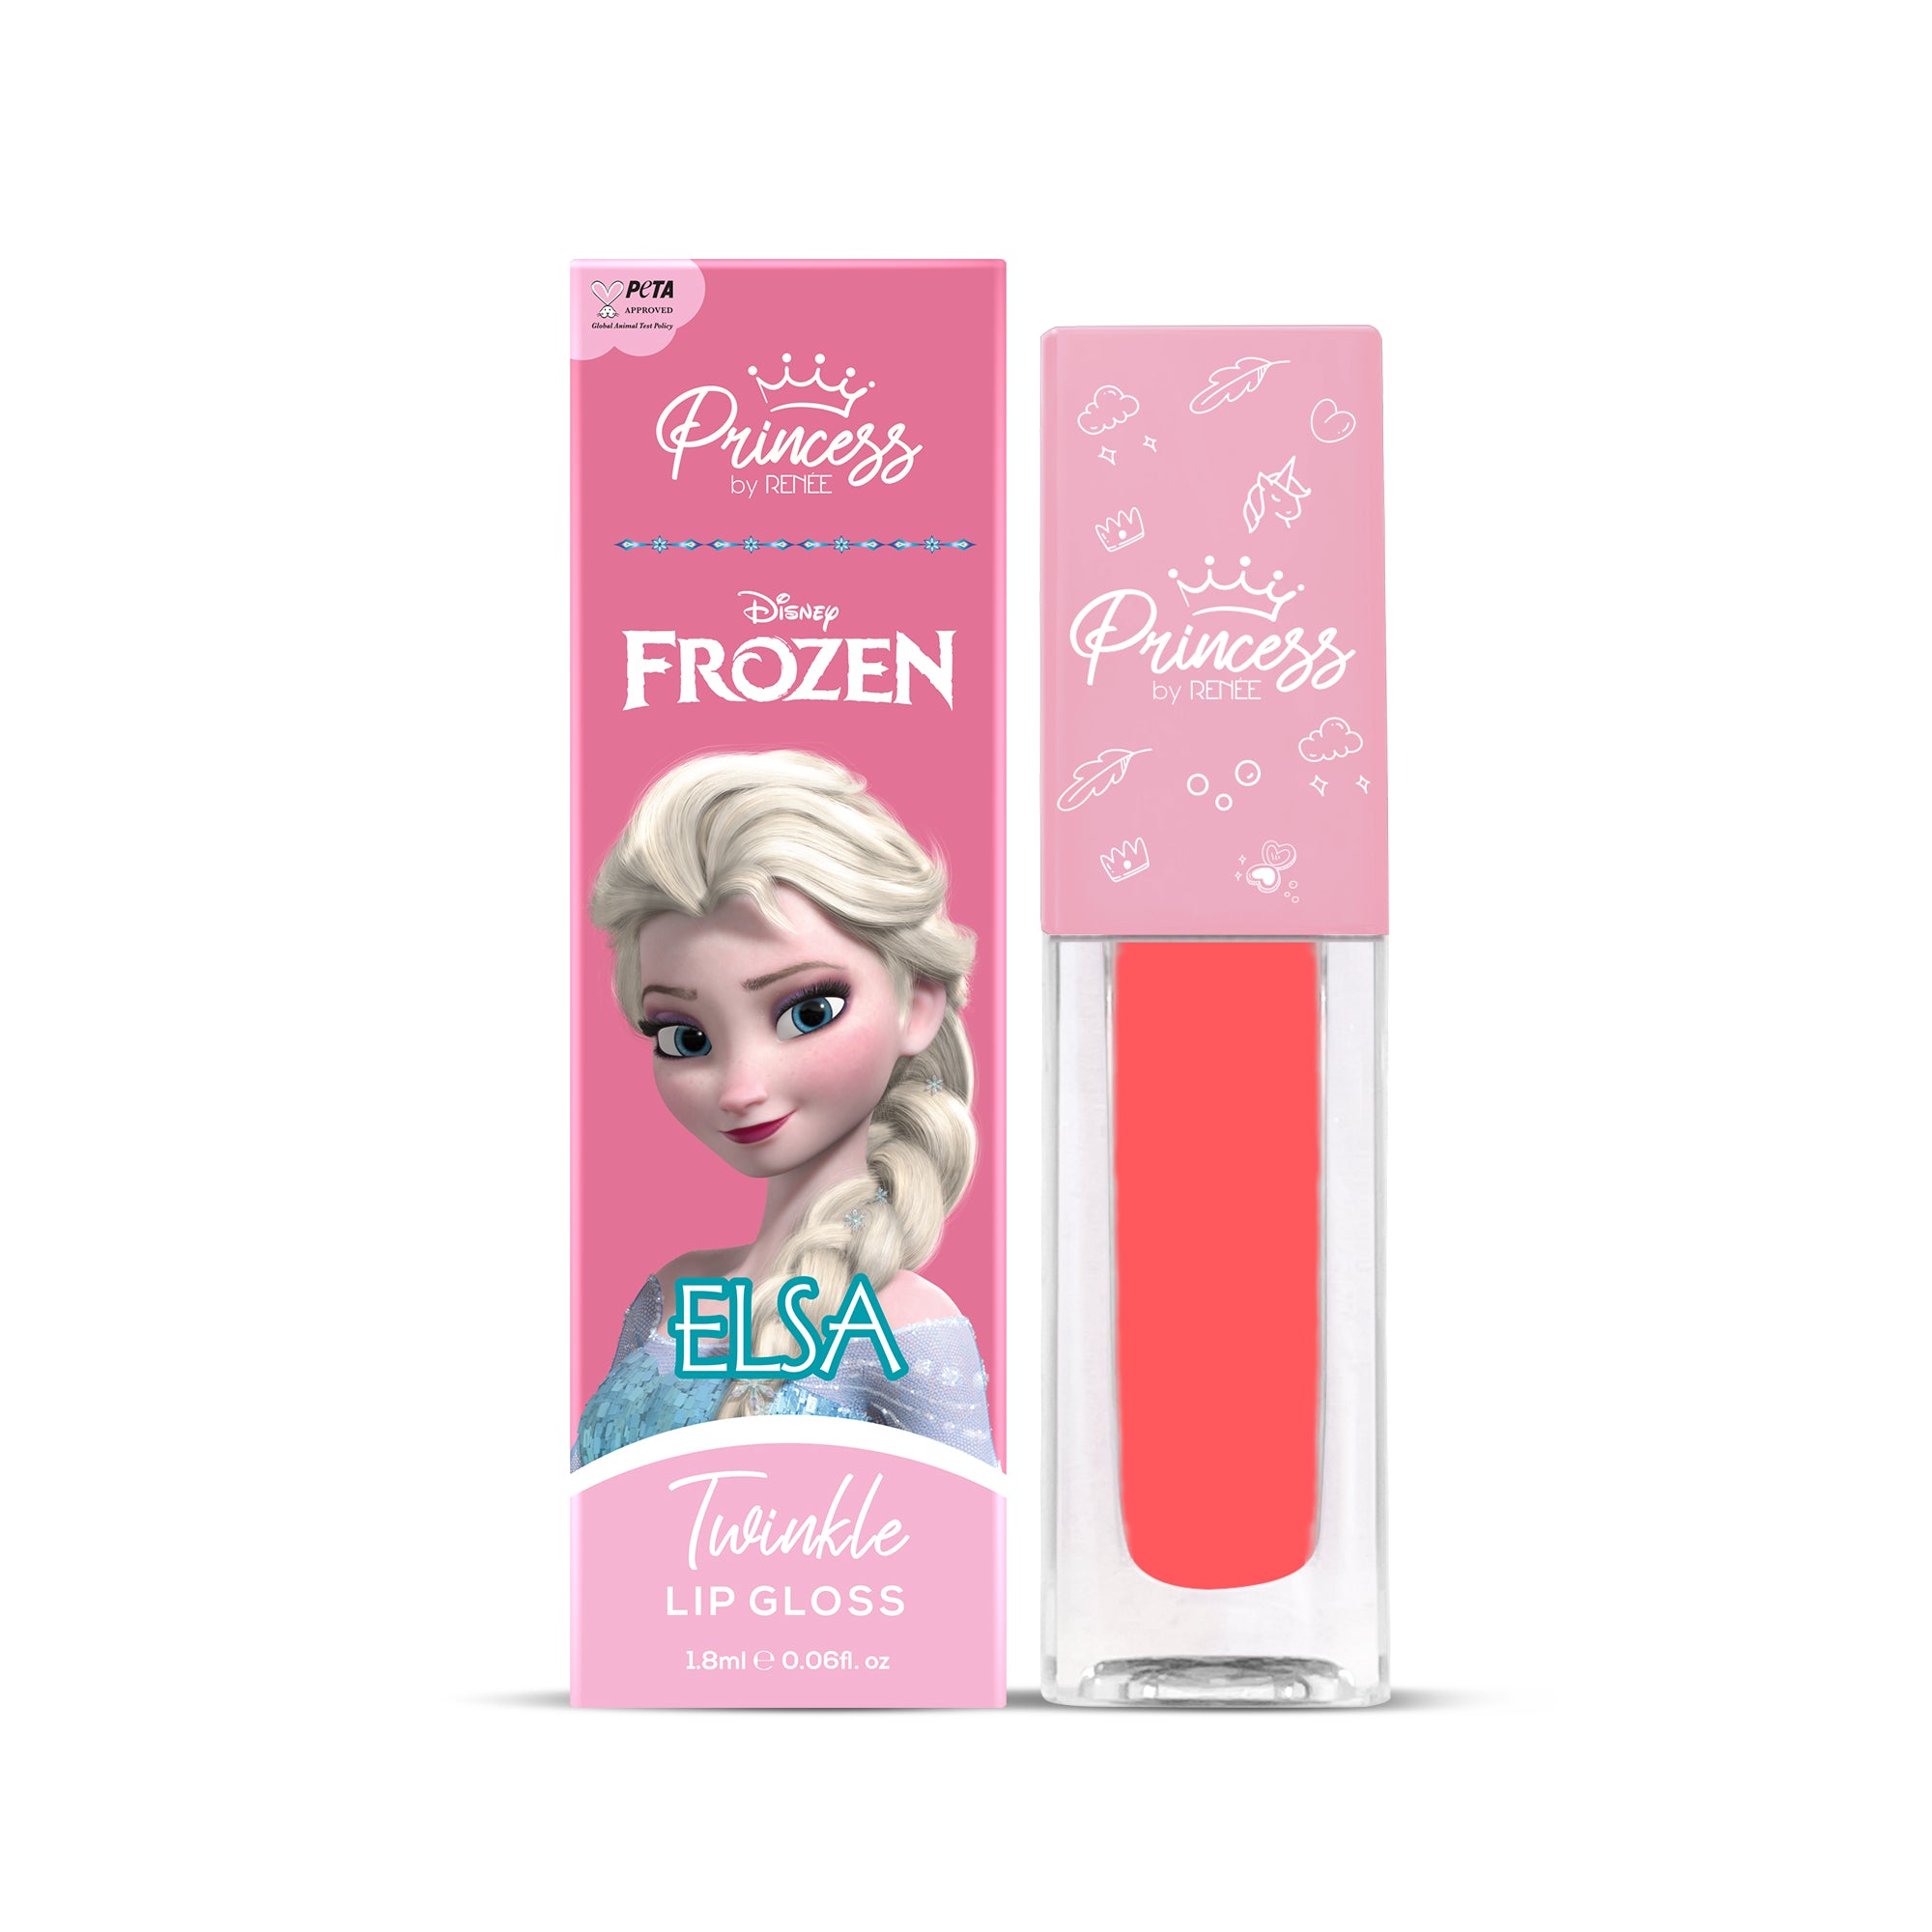 Disney Frozen Princess By RENEE Twinkle Lip Gloss 1.8 Ml